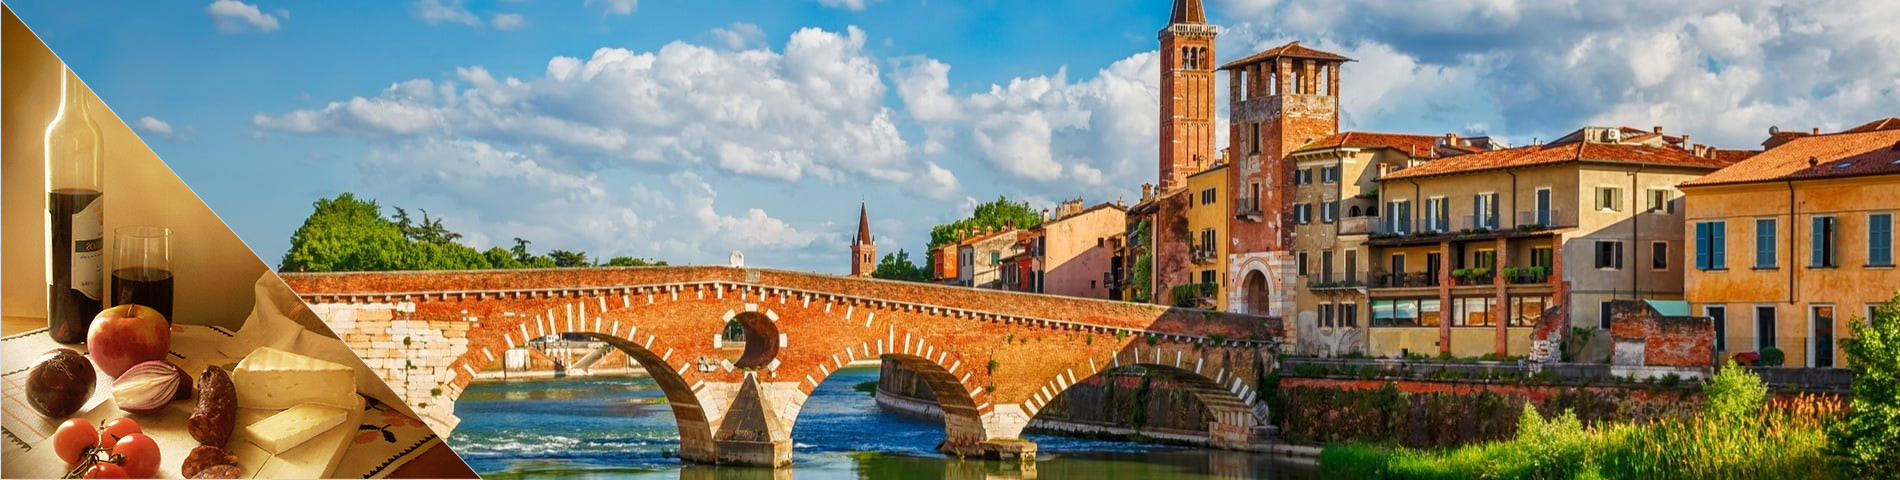 Verona - Italština a Kultura